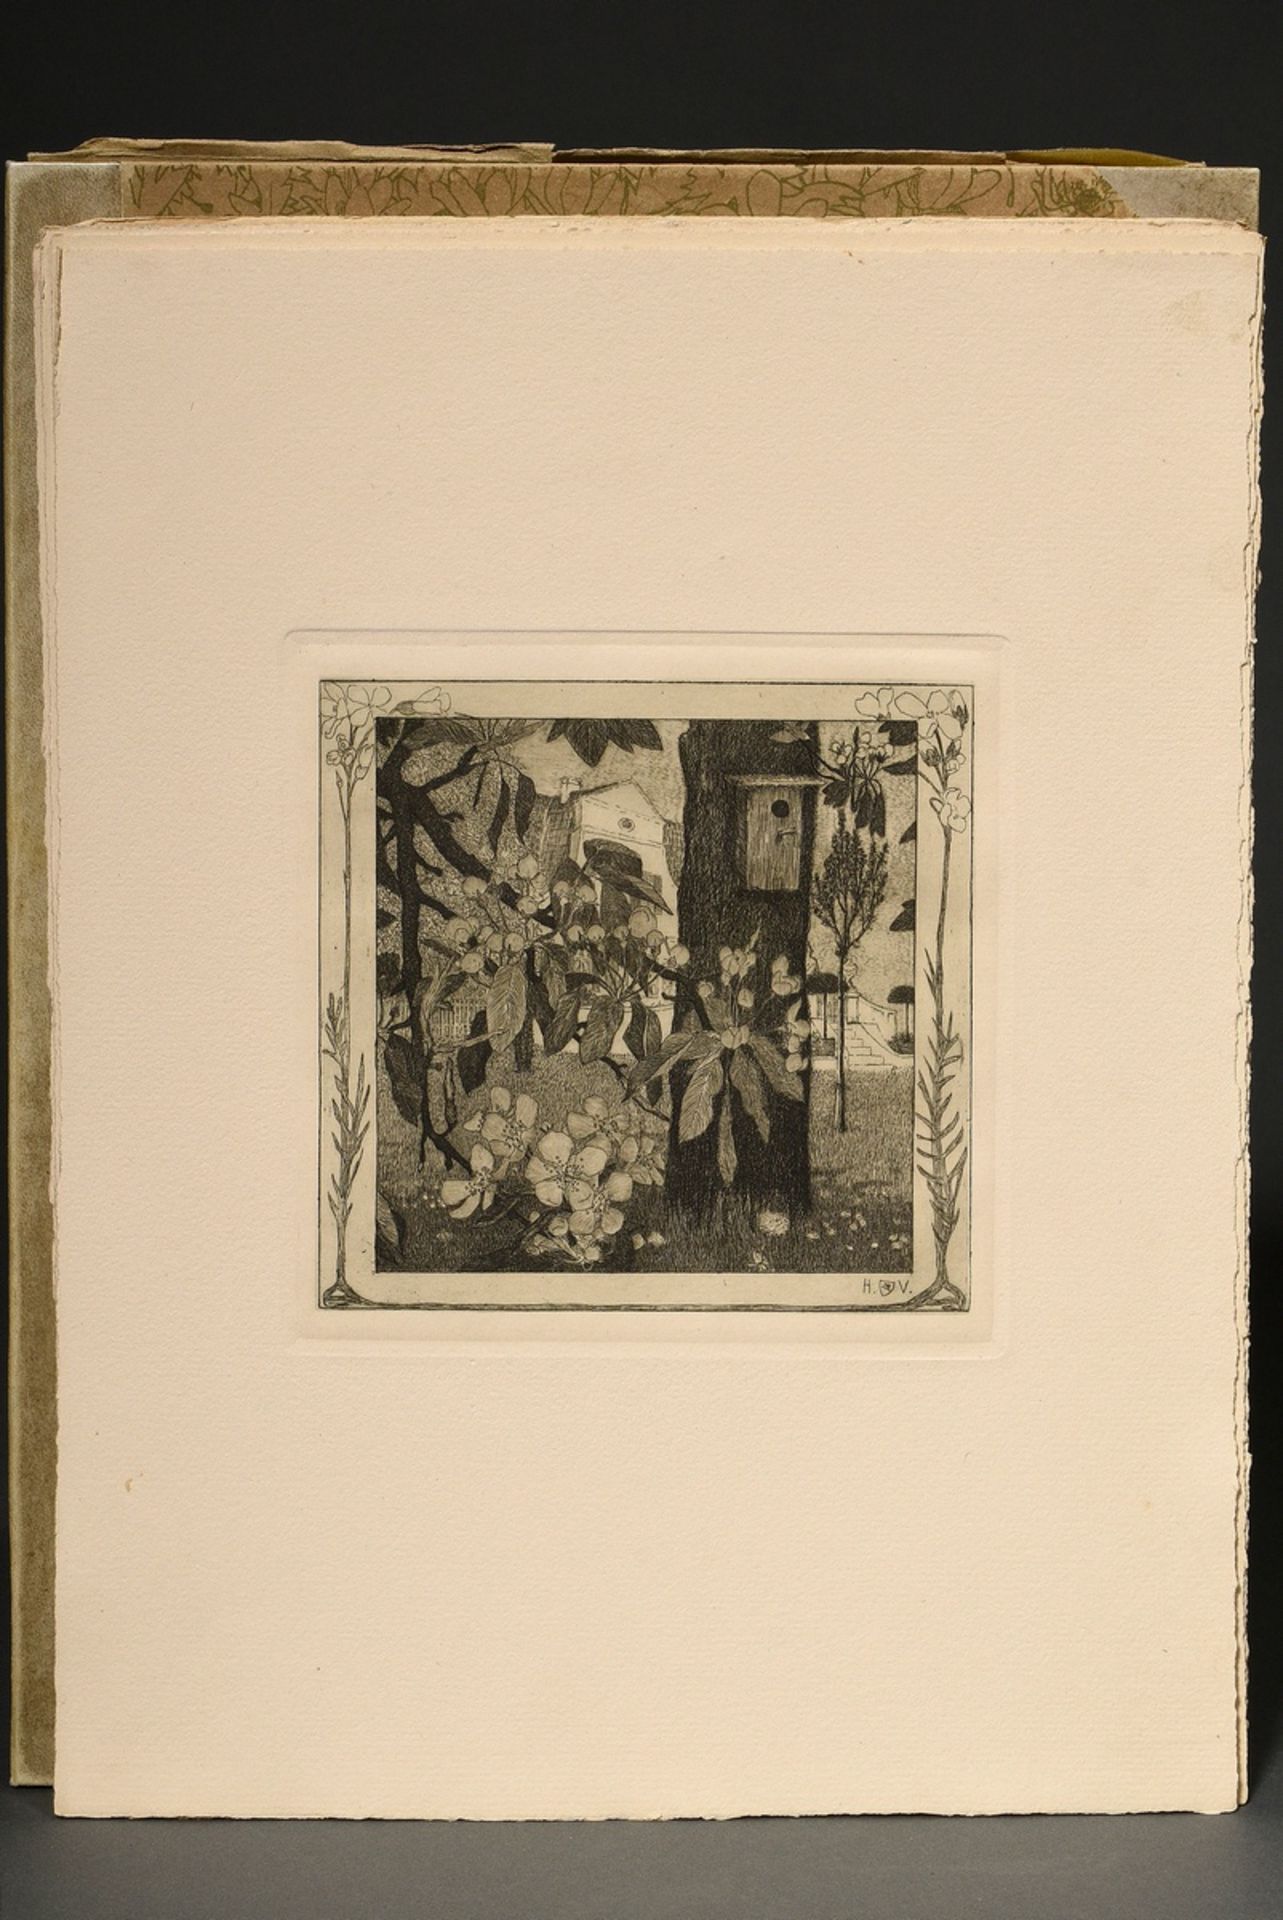 Vogeler, Heinrich (1872-1942) "An den Frühling" 1899/1901, portfolio with 10 etchings and prelimina - Image 22 of 25